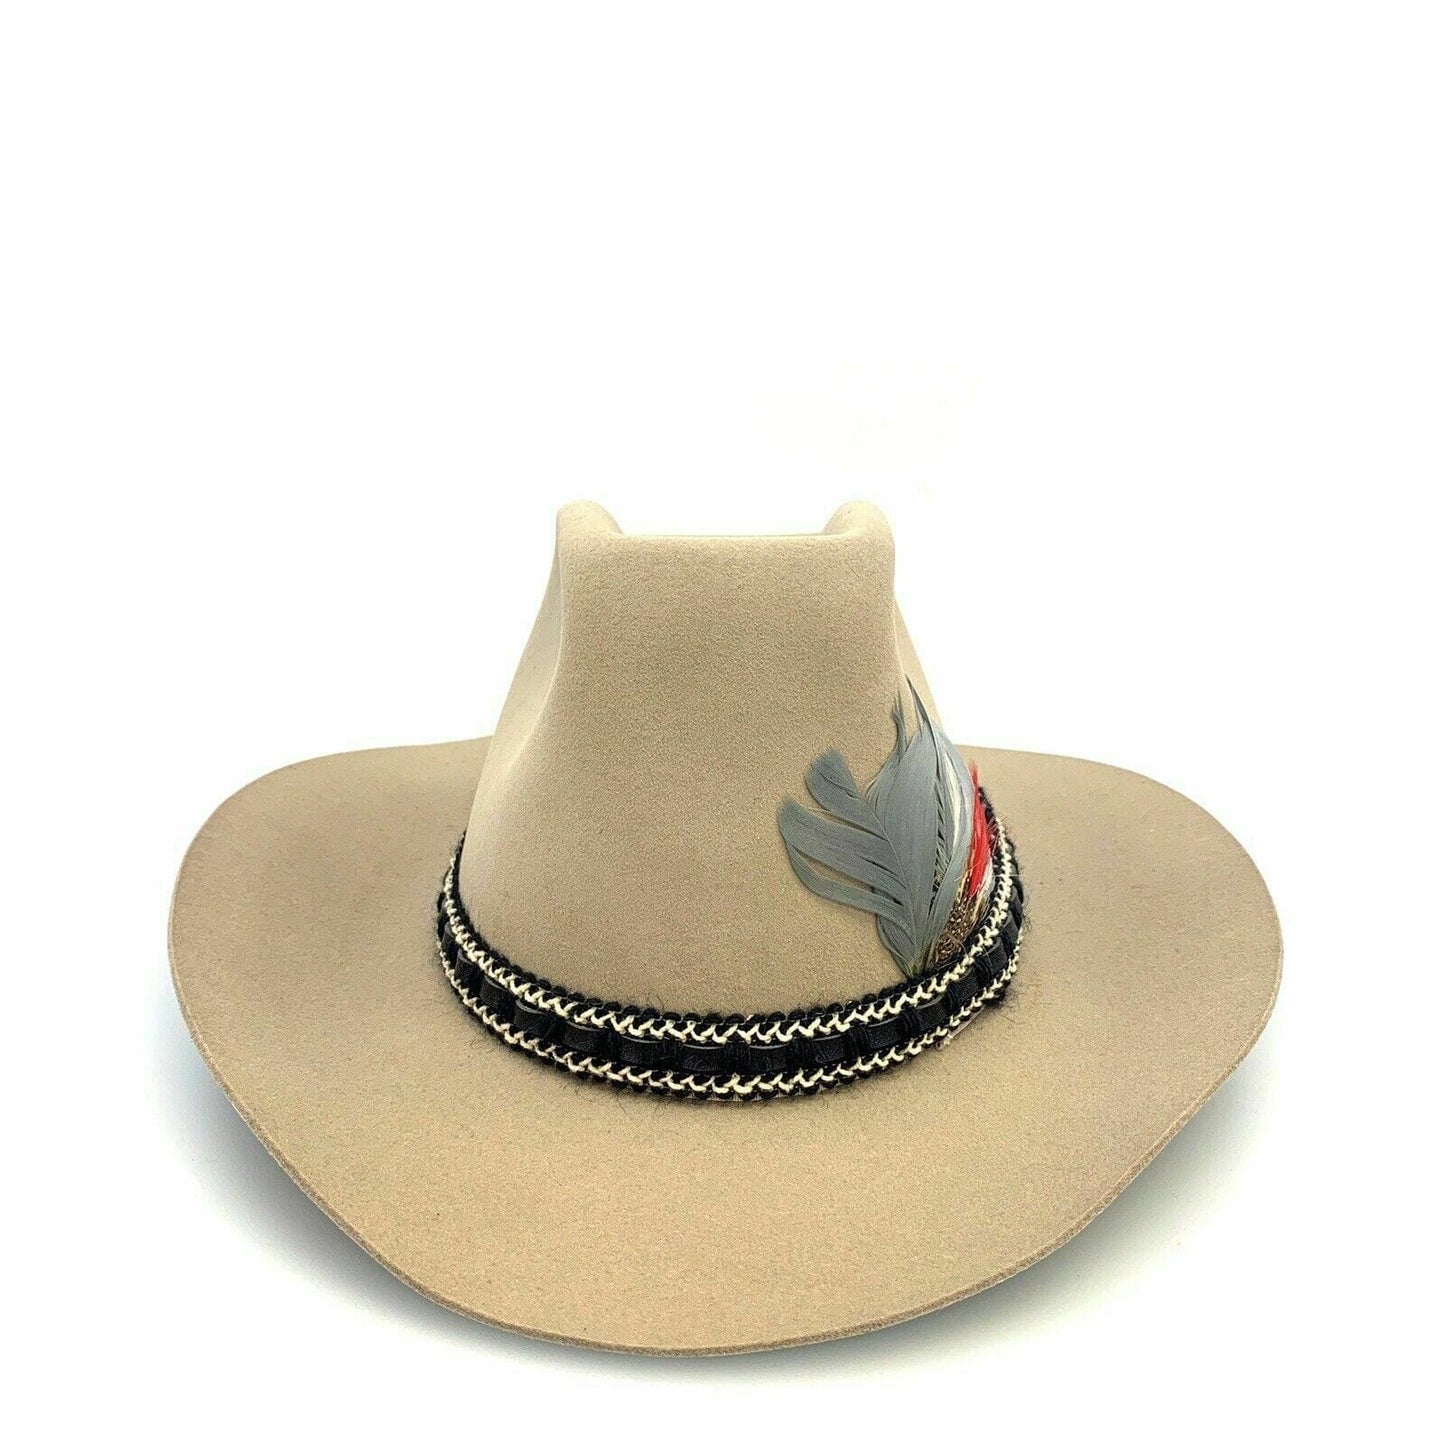 Rockmount Ranch Wear Mens Size 7 1/4” Beige Tru-West Cowboy Hat